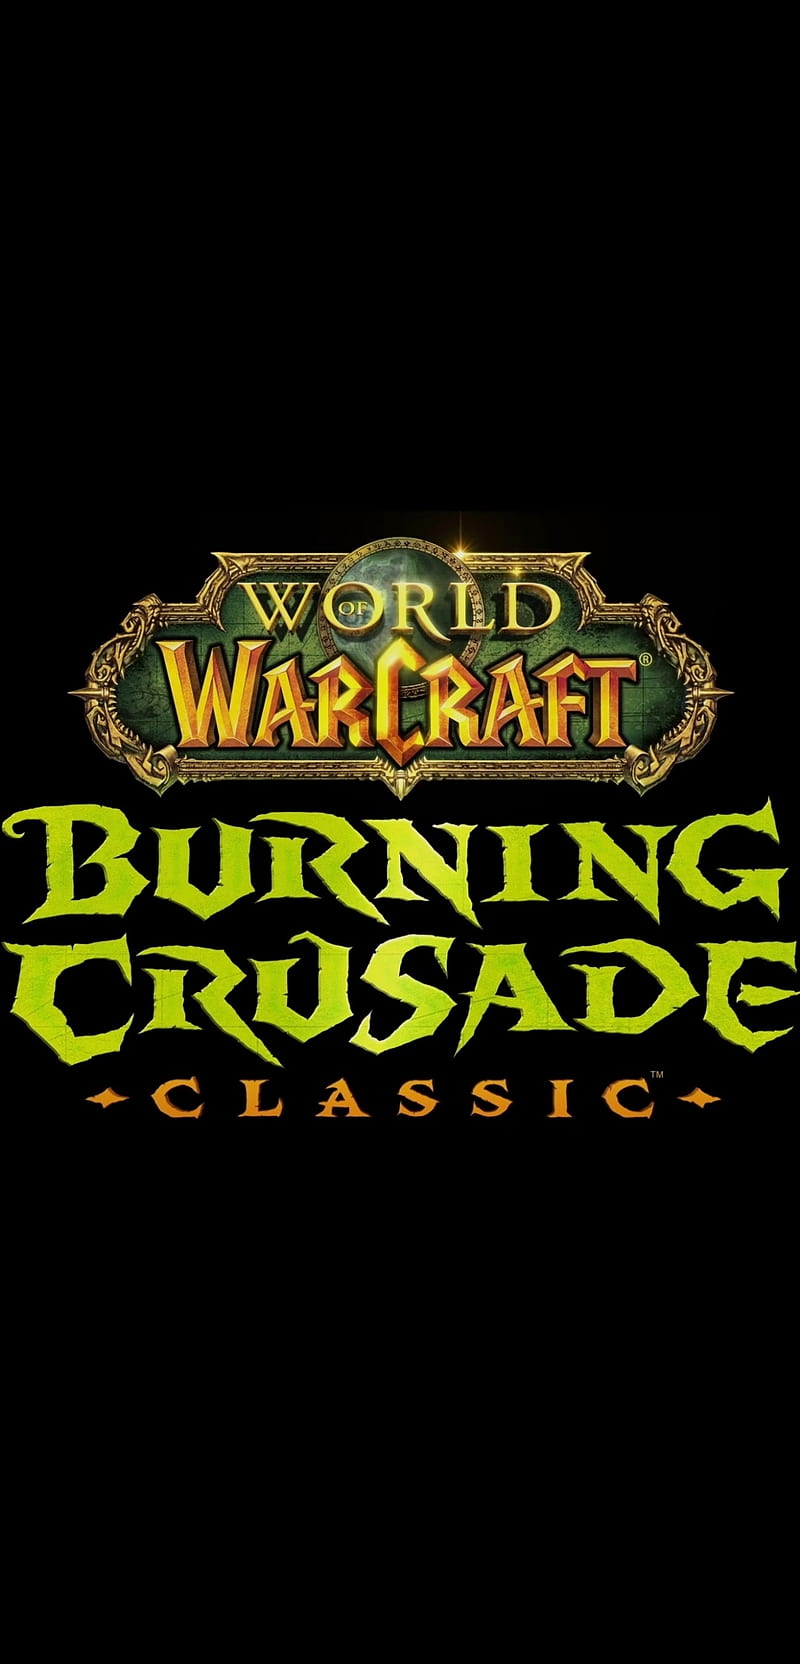 Burning crusade , burning crusade, tbc, world of warcraft, wow, HD phone wallpaper